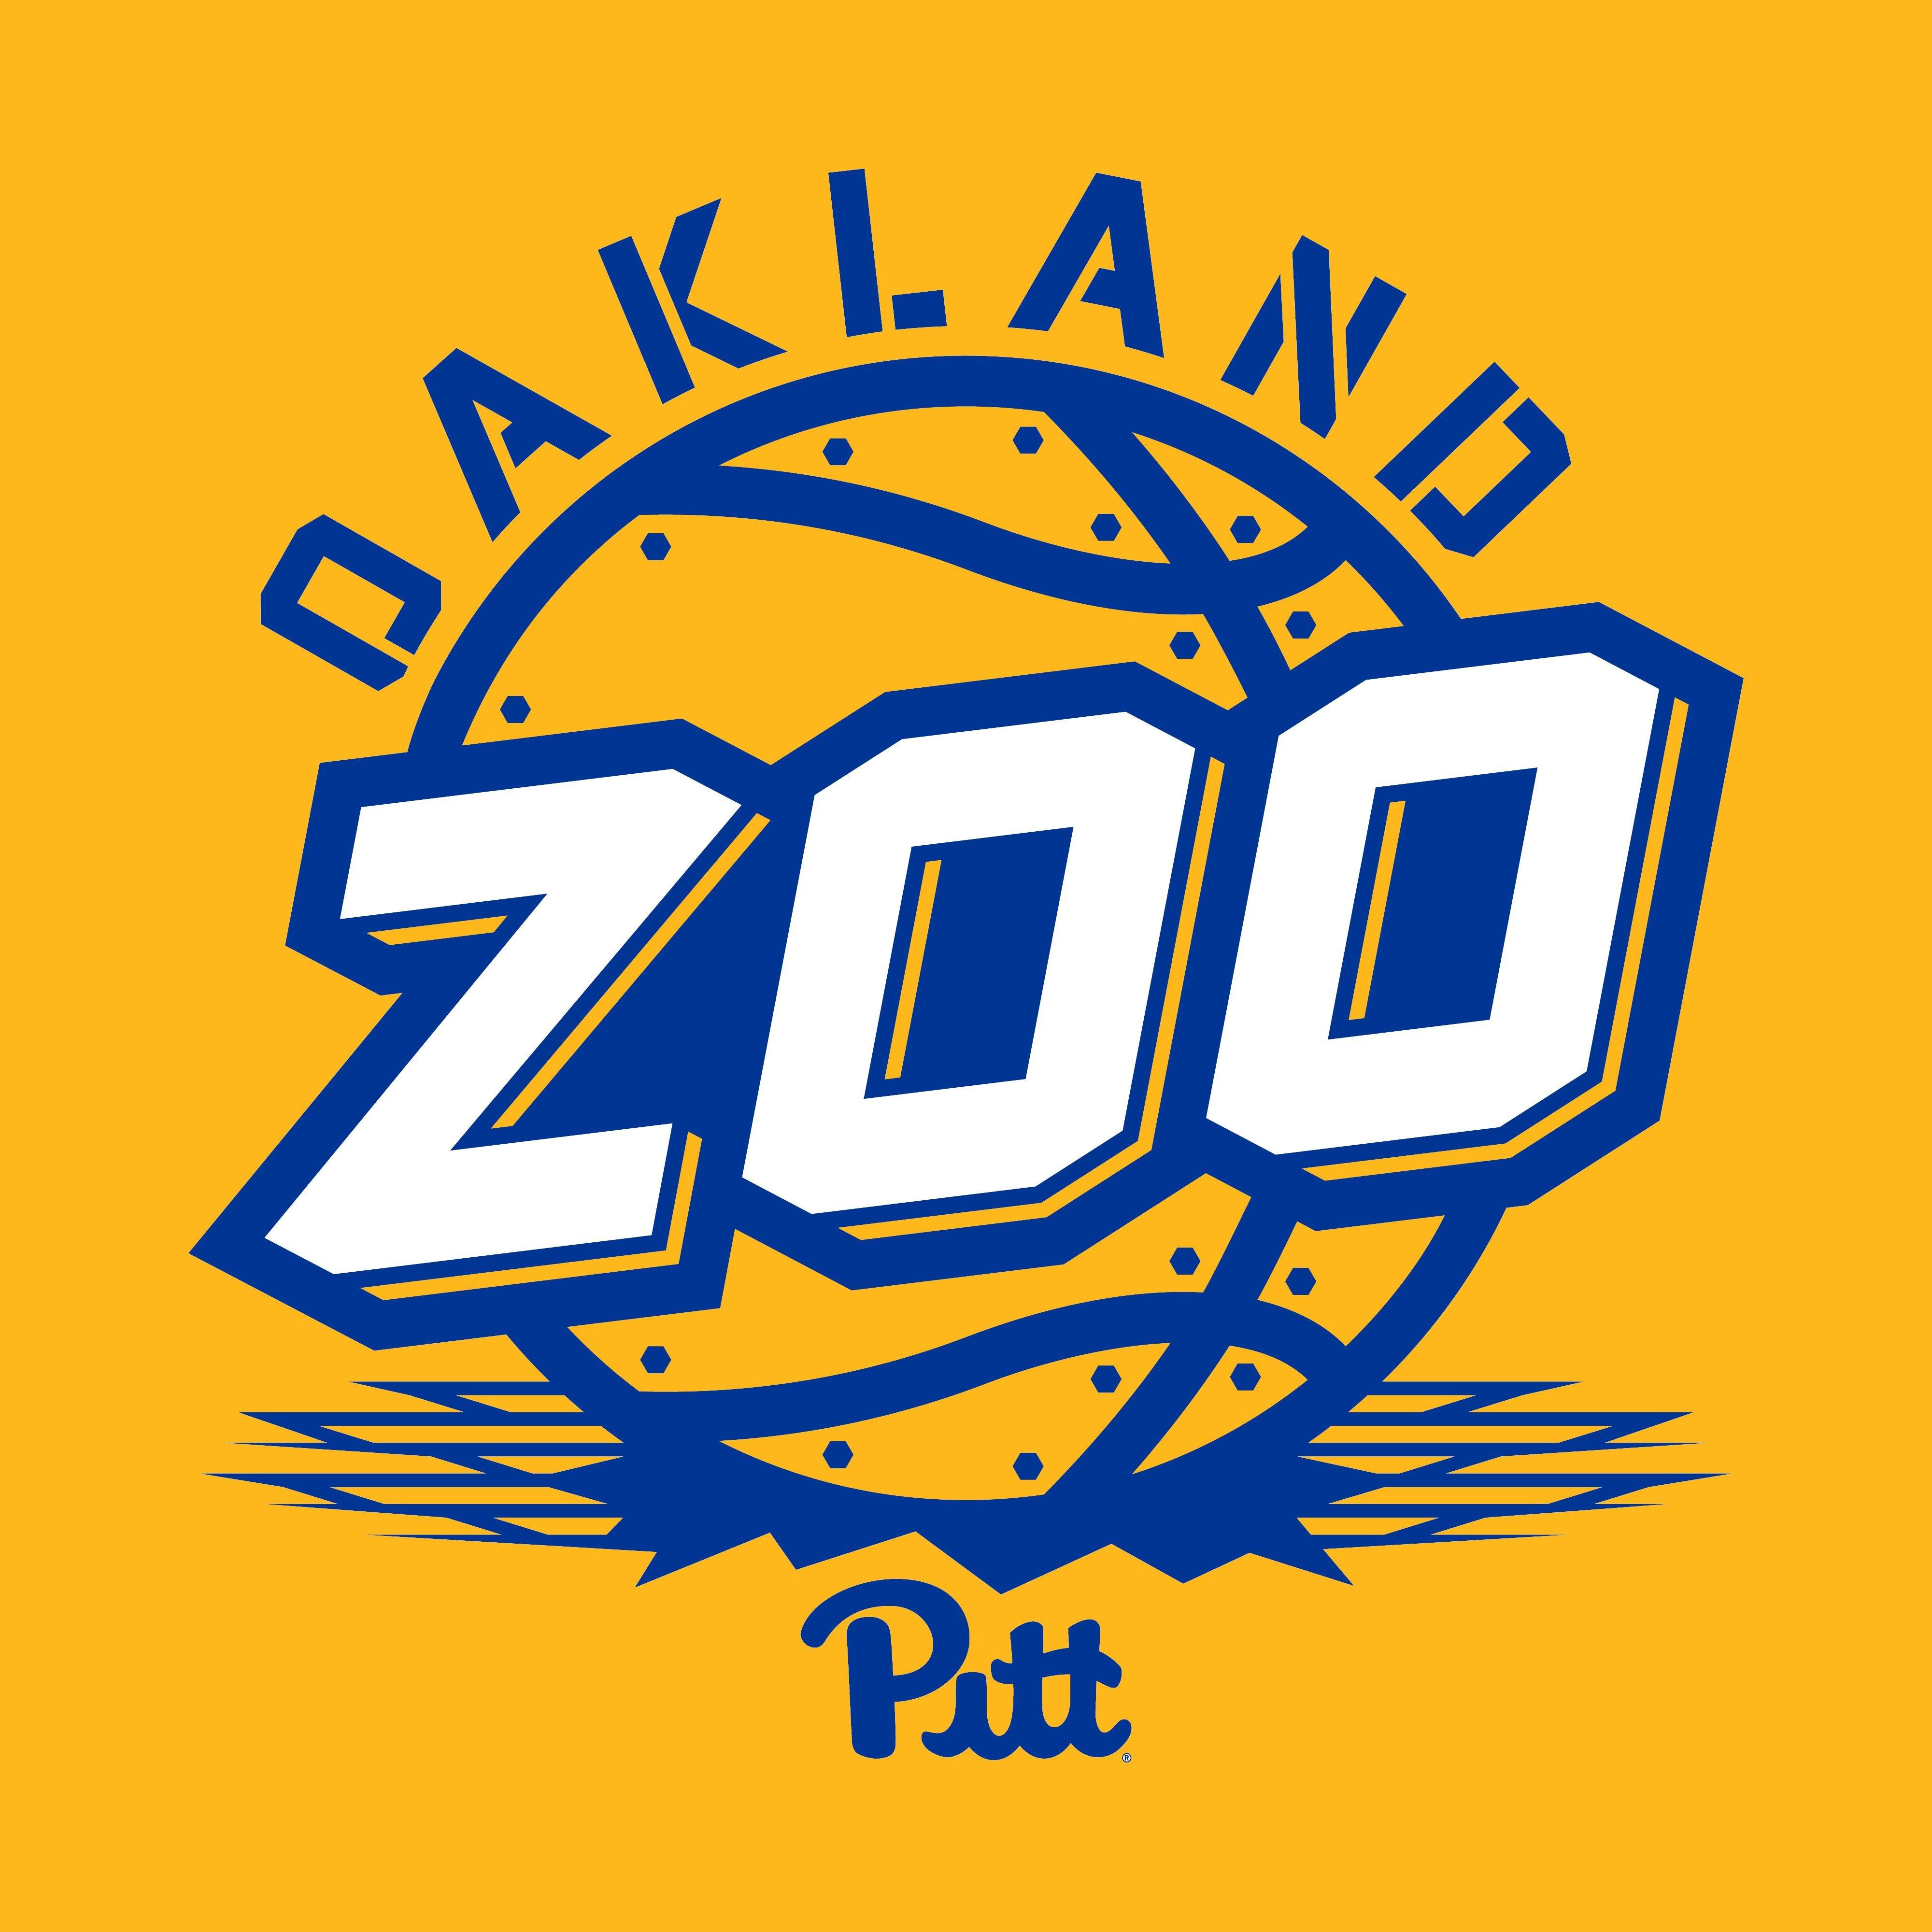 Zoologo Logo - Oakland Zoo على تويتر: #ZooEra calls for a #ZooLogo